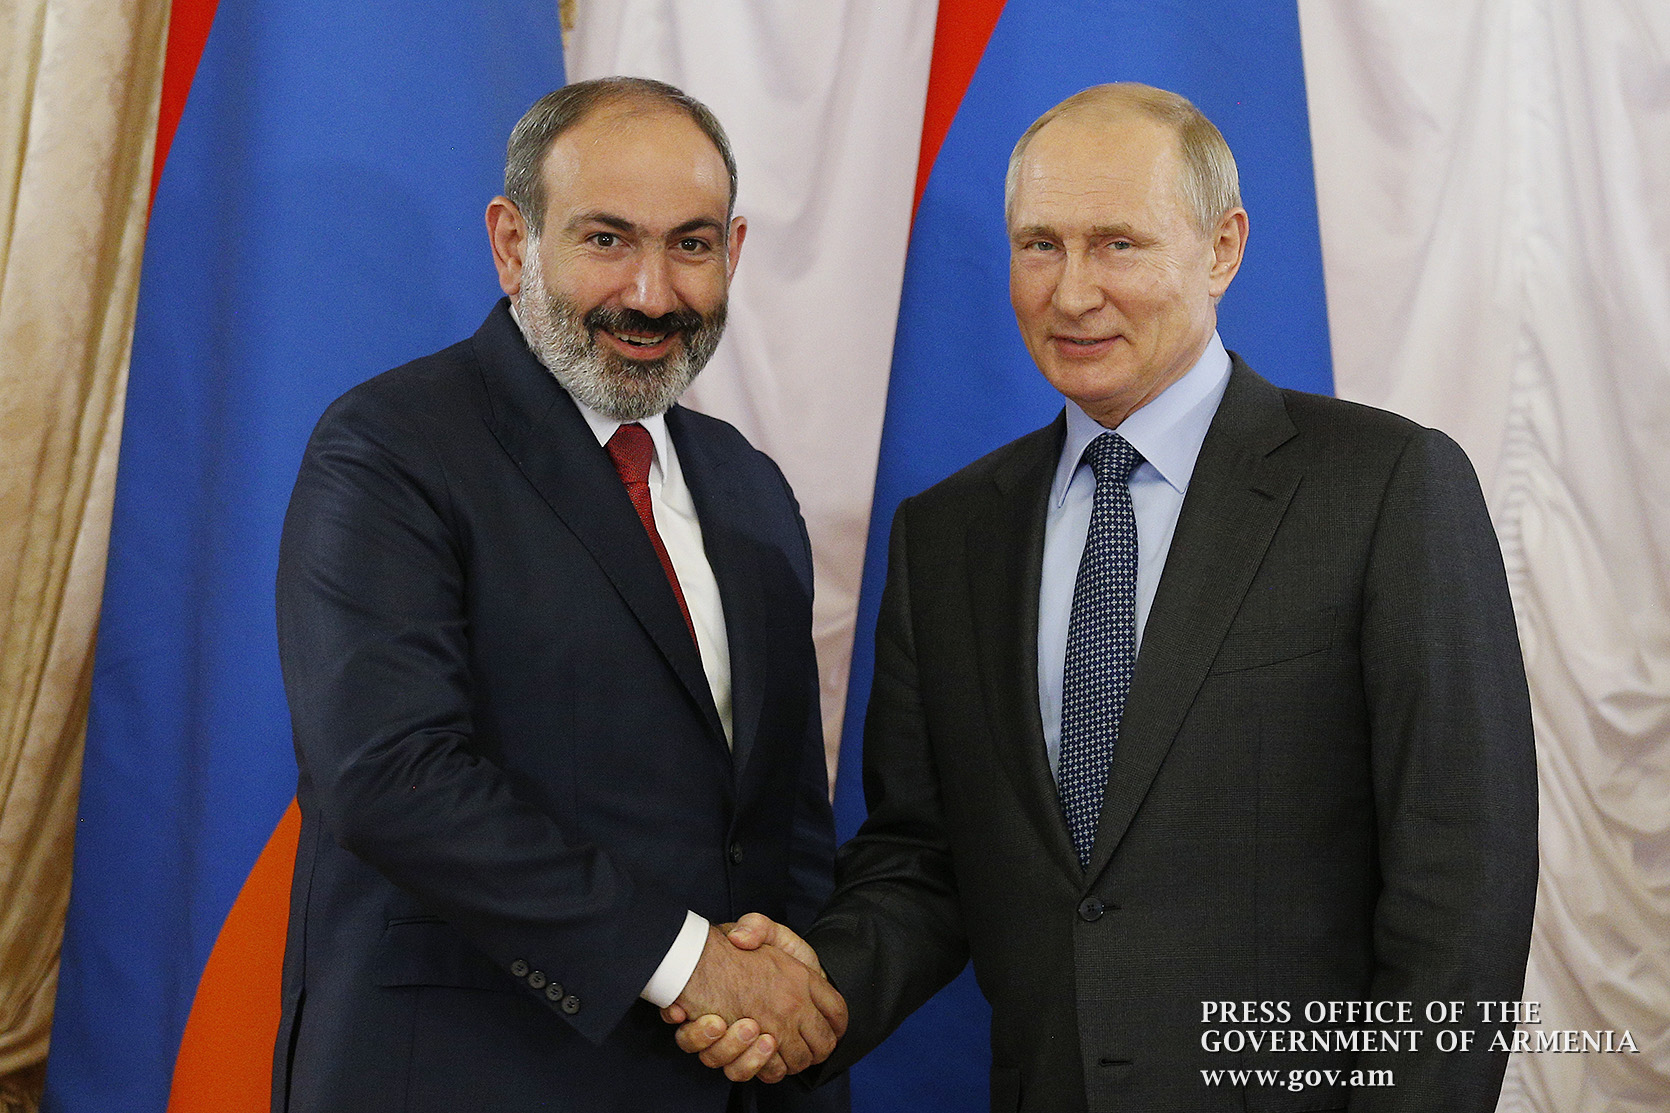 Кремль: Карабахский конфликт на встрече Путина с Пашиняном «не обговаривался подробно»